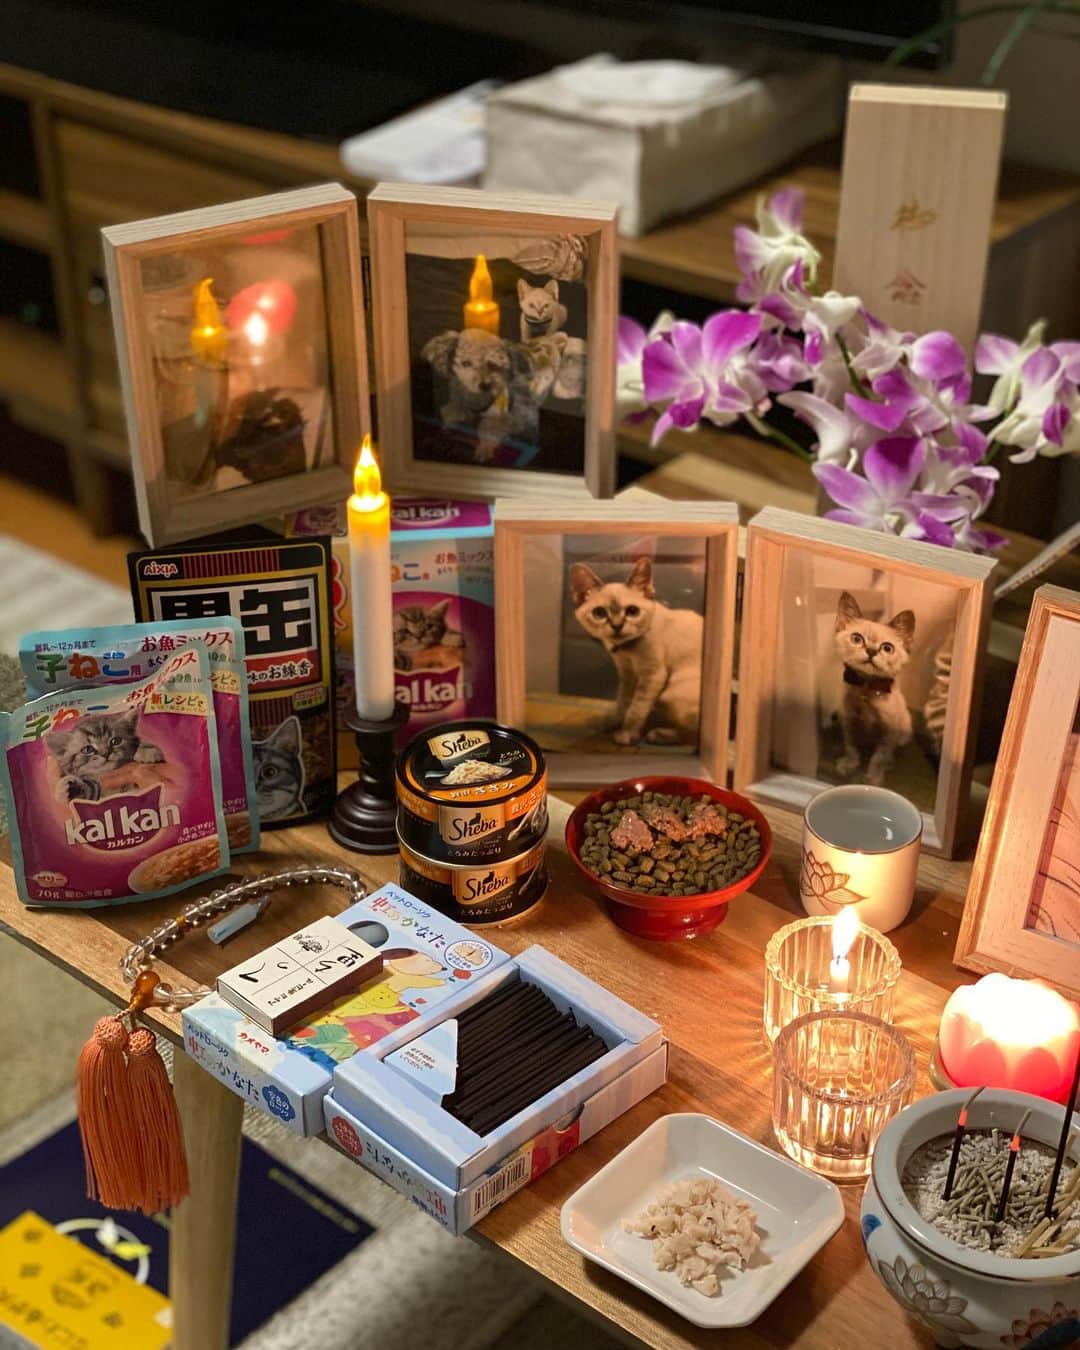 照井和希さんのインスタグラム写真 - (照井和希Instagram)「大阪動物病院でご紹介して頂き 宝塚動物霊園で本日 令和2年10月4日  15時から愛猫つゆのお葬式を行いました。  棺も綺麗な木箱に変え ピンクの可愛いお布団に寝かせて貰い 女の子らしい可愛い色のお花とつゆの大好きな物を沢山詰めました。  七夕の日つゆを保護する為に慌てて買い足したタオル 来てすぐつゆの寝場所がなかなか定まらないから あらゆる所に敷き詰めてどこで寝ても お腹が冷えない様にと買ったタオル 私の枕カバーで良く寝てた つゆのお気に入りだったね。 お家の匂いが染み付いてるからきっとつゆも落ち着くかな？  つゆが寂しくないように初めて買ったお人形は くまが入れてあげてって持って来てくれたんだよ でもそこまで気に入ってなかったよね。笑  妹からも、病院からも、ママの知り合いの方からも ご飯とおやつのお供物、私も嬉しかったです。 穂乃佳も気遣って寄り添ってくれてありがとう。  つゆもほのかにご飯くれー！って 足下まとわりついてたもんね。笑 人懐っこくて誰にでも甘えん坊のつゆだったな  スタッフさんがしっかり三途の川を渡れるようにと つゆにお守り持たせてくれたね。慌てずゆっくり渡れたかな？ 数珠も持ってるんだよ🍀おててが可愛いつゆちゃん。 そして紙を渡され、ギュッと手に祈りを込めるようにと。 私を忘れない様に私の香りを。その紙もつゆのそばへ 素敵な物沢山準備して下さいました。嬉しかったです。  伝え忘れない様に手紙も書きました 愛おしい瞬間を収めたつゆの写真も。 つゆが初めてバルコニーでお外眺めた日の写真も。 つゆの家を忘れない様にと気持ちを込めて。  どの瞬間もつゆを思い出して涙が溢れました 愛おしいつゆとの時間がずっとフラッシュバックして消えなかった  サヨナラの瞬間も名残惜しくて辛かった 沢山言葉で伝えて沢山キスして沢山撫でたけど やっぱり寂しかったです。離したくないって思ってしまいました。  最後は大好きだよと伝え 頭にキスをしてお別れしました。  つゆちゃんが空に登るのを 1人で外で座って眺めてました。 不思議ですが私には熱で揺れる空気の中に いくつもの虹が見えた気がします。 空を見てると元気なつゆが浮かんで 私の感情で引き留めずに、元気に向かわせてあげようって 自然と笑顔で いってらっしゃいが言えました。  小さくなったつゆも愛おしかったです お骨になった我が子も可愛いなって素直に思えました。  最後に壺に入ったつゆを抱き抱えた時 温かくて 冷たいつゆじゃなくて また涙が溢れました。  つゆちゃんは甘えん坊だったから またすぐ形を変えて私に会いに来てくれそうな気がします。 それから 私はつゆって事に気付けそうな気もします。  ボロボロだったつゆ お腹の毛も生えて少し肉付きが良くなって みるみる見違えて綺麗になりました。 辛い思いしたもんね、来世では丈夫な身体で生まれて来てね いつか私のお腹に戻って来てくれると嬉しいな  それでも猫だったつゆを私は絶対に忘れないよ🌈🐾  つゆと日向ぼっこするのが私の夢でした 季節が変わり、部屋に太陽の光が入る様になった つゆが入院してる間早くここでつゆを 抱き締めてゴロゴロしたいなって思ってた  つゆに夏と違うぽかぽかした太陽を感じさせてあげたかった。 叶わなかったって散々泣いたけど お葬式に向かう車の中でつゆちゃんを優しい太陽の光が 包んでくれました。最後の最後に神様は 私のお願いを叶えてくれました。  つゆ、幸せだったね。 甘えたくなったらまたいつでも降りて来るんだよ 私はずっとずっと、ずっとずっとつゆの事を想ってます。  骨壺の色は梅雨時期の色に合わせてみました 星が沢山で七夕っぽいね。🎋 水色を見ると私はつゆの顔が浮かびます。 7月7日は織姫と彦星じゃなくて、つゆと和希だよ😂🍀笑 つゆちゃん、忘れないように☺️  素敵なお葬式行えた事に感謝してもしきれません 手厚く、丁寧に、つゆを空に送って下さいました 私も安心してつゆを見送る事ができました 猫ちゃんも居たし、沢山お友達が眠ってるから つゆも安心だね🐾  書きたいことはまだまだあるけど 忘れない様に今日はここまでで留めておきます  愛するという感情は愛おしく尊いです こんな気持ちにさせてくれた娘に感謝 撫でたいな、会いたいよ。 本音はやっぱり寂しいです。  私と同じタイミングでお見送りに来たご家族 お母さんが凄く泣いてた。それを見て私も泣いてしまった 全然知らない人だけど抱きしめてあげたかった  つゆちゃん、あのお母さんのところの 猫ちゃんかな？ワンちゃんかな？もし一緒に向かったなら そっちで 仲良くしてあげてね   つゆ、お友達沢山作ってね 大好きだよ。  #保護猫を家族に #保護犬を家族に」10月4日 21時54分 - kazu24ki